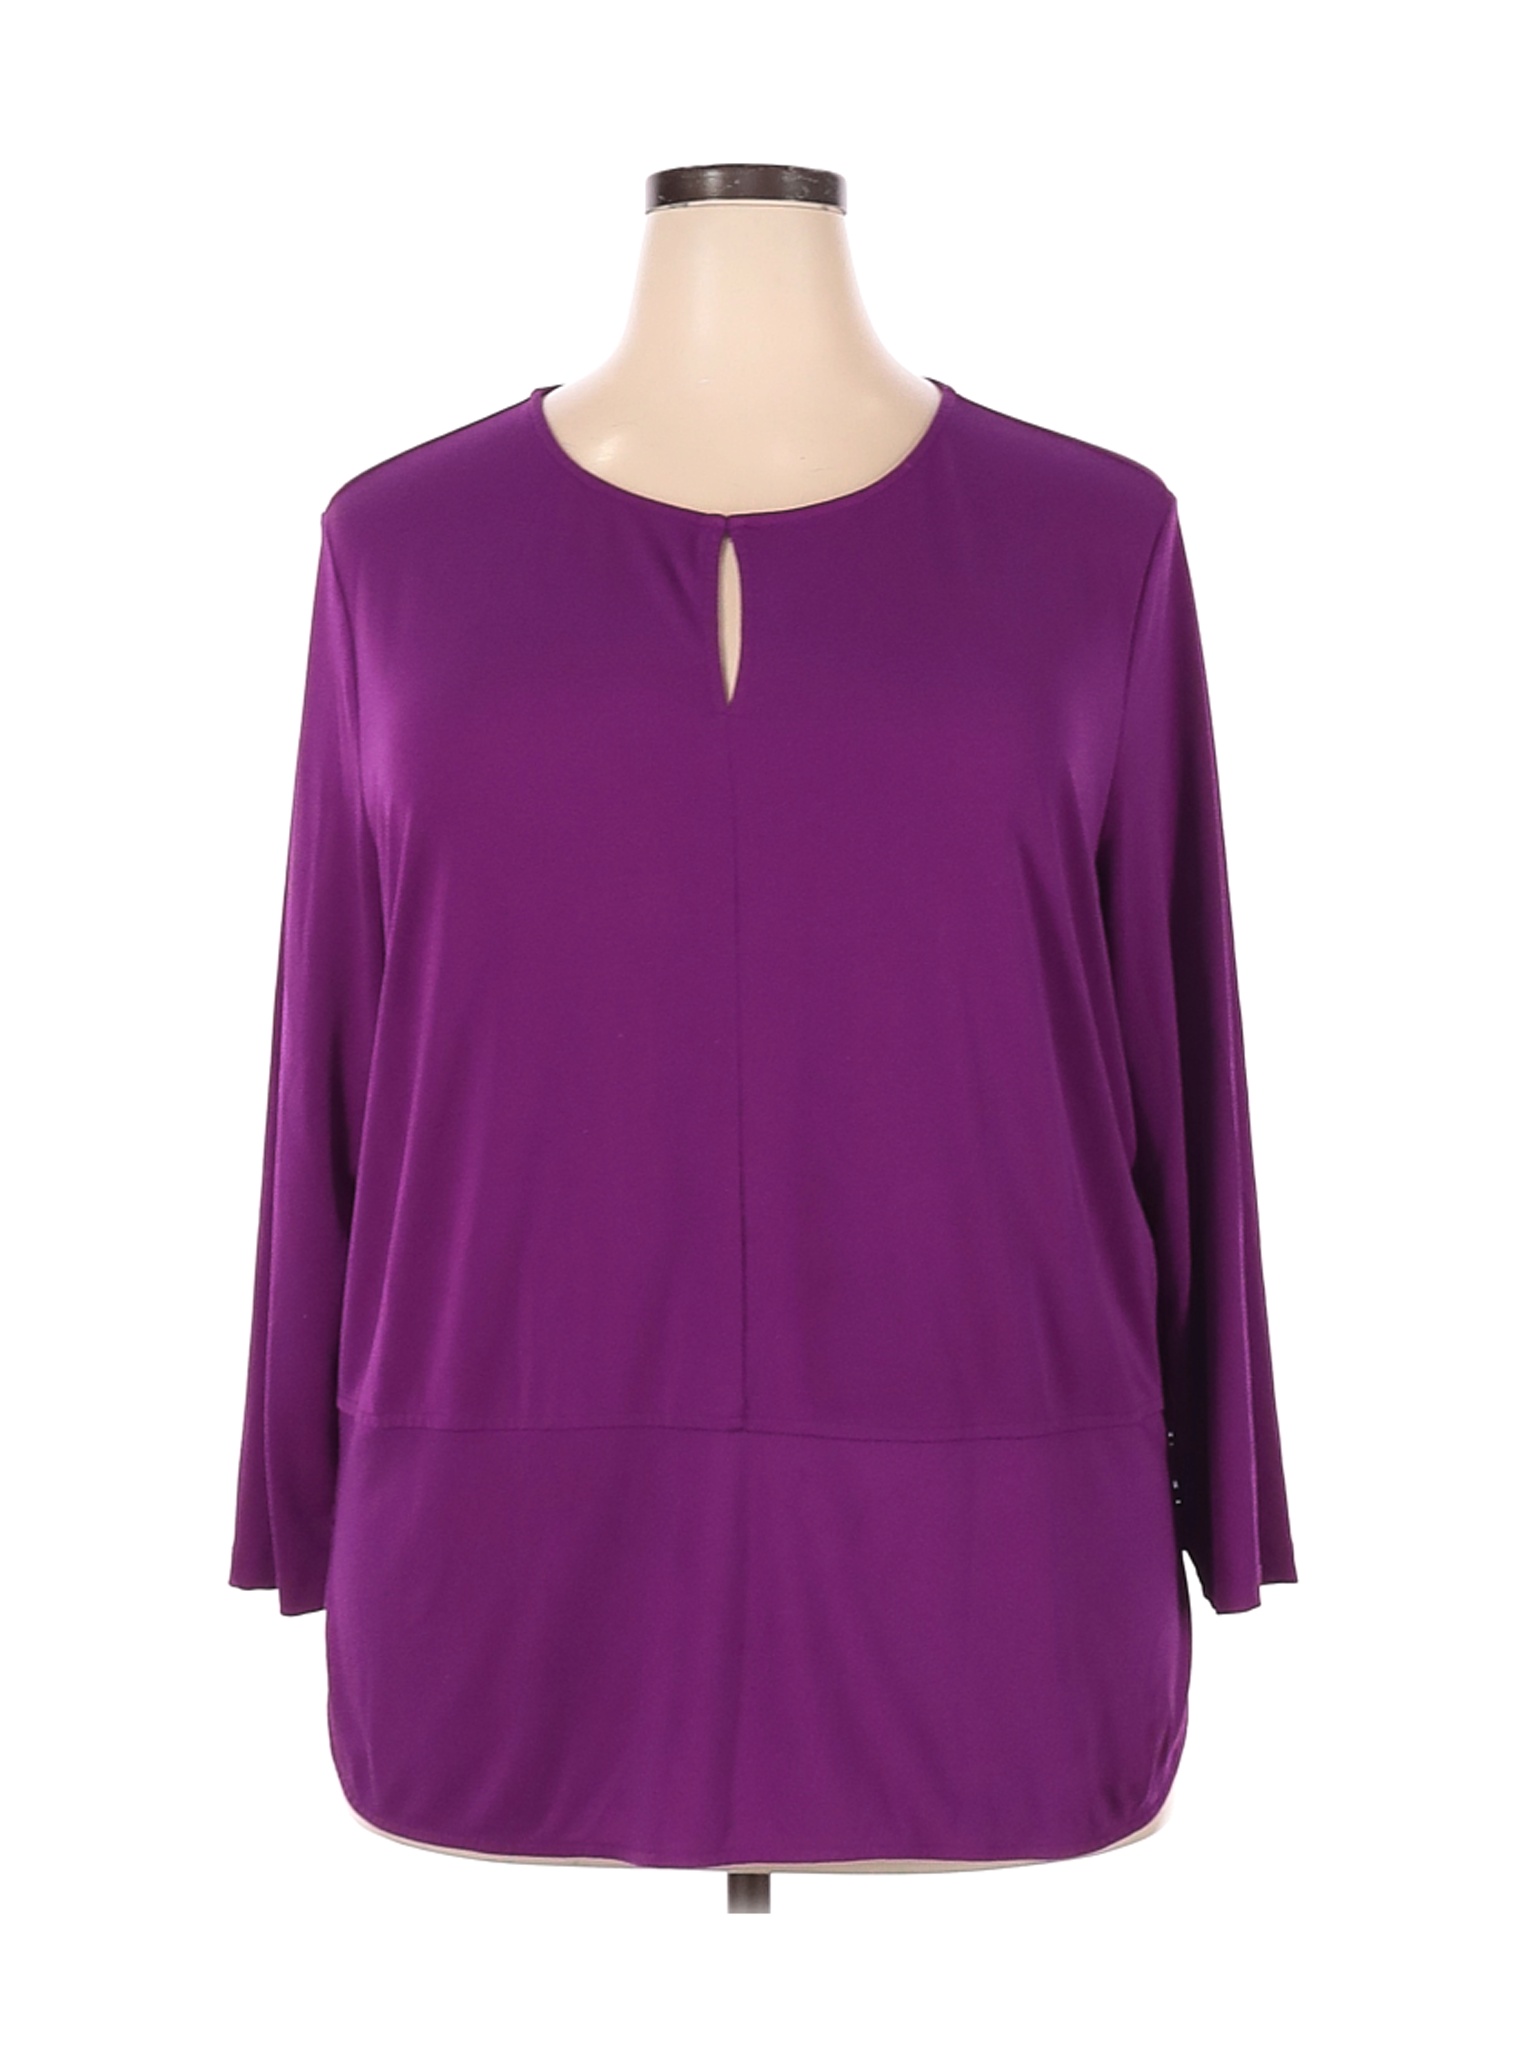 Lauren by Ralph Lauren Women Purple Long Sleeve Blouse 2X Plus | eBay